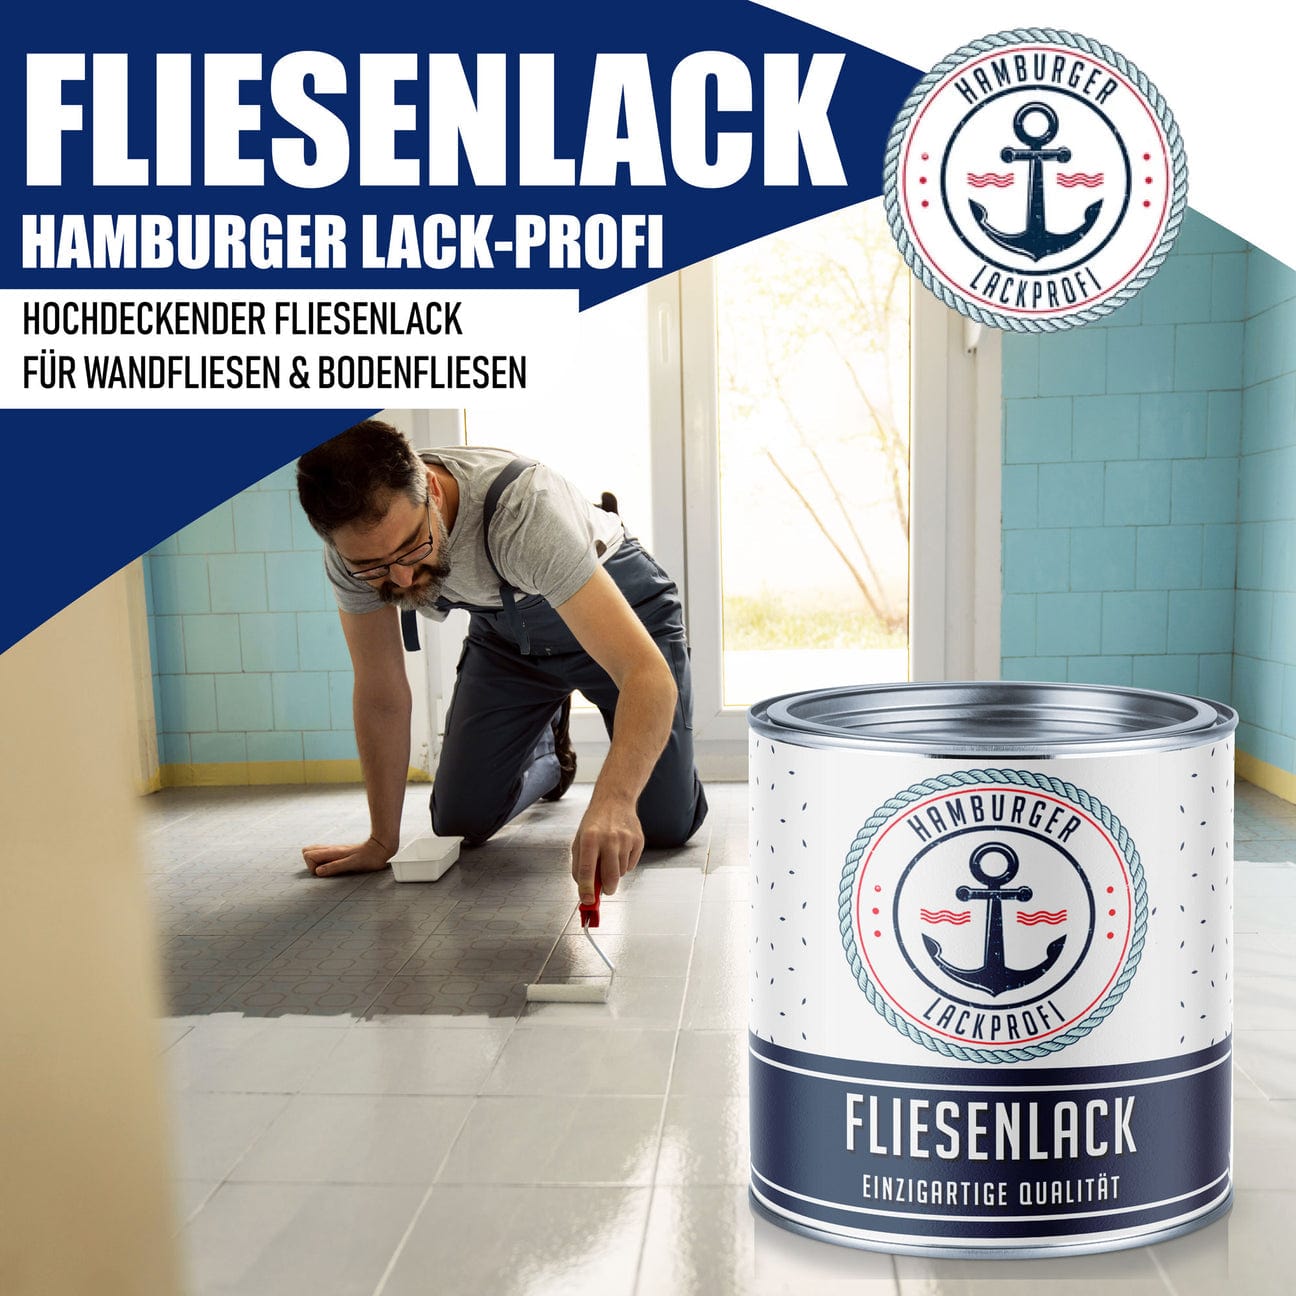 Hamburger Lack-Profi Hamburger Lack-Profi Fliesenlack Achatgrau RAL 7038 - hochdeckende Fliesenfarbe Grau